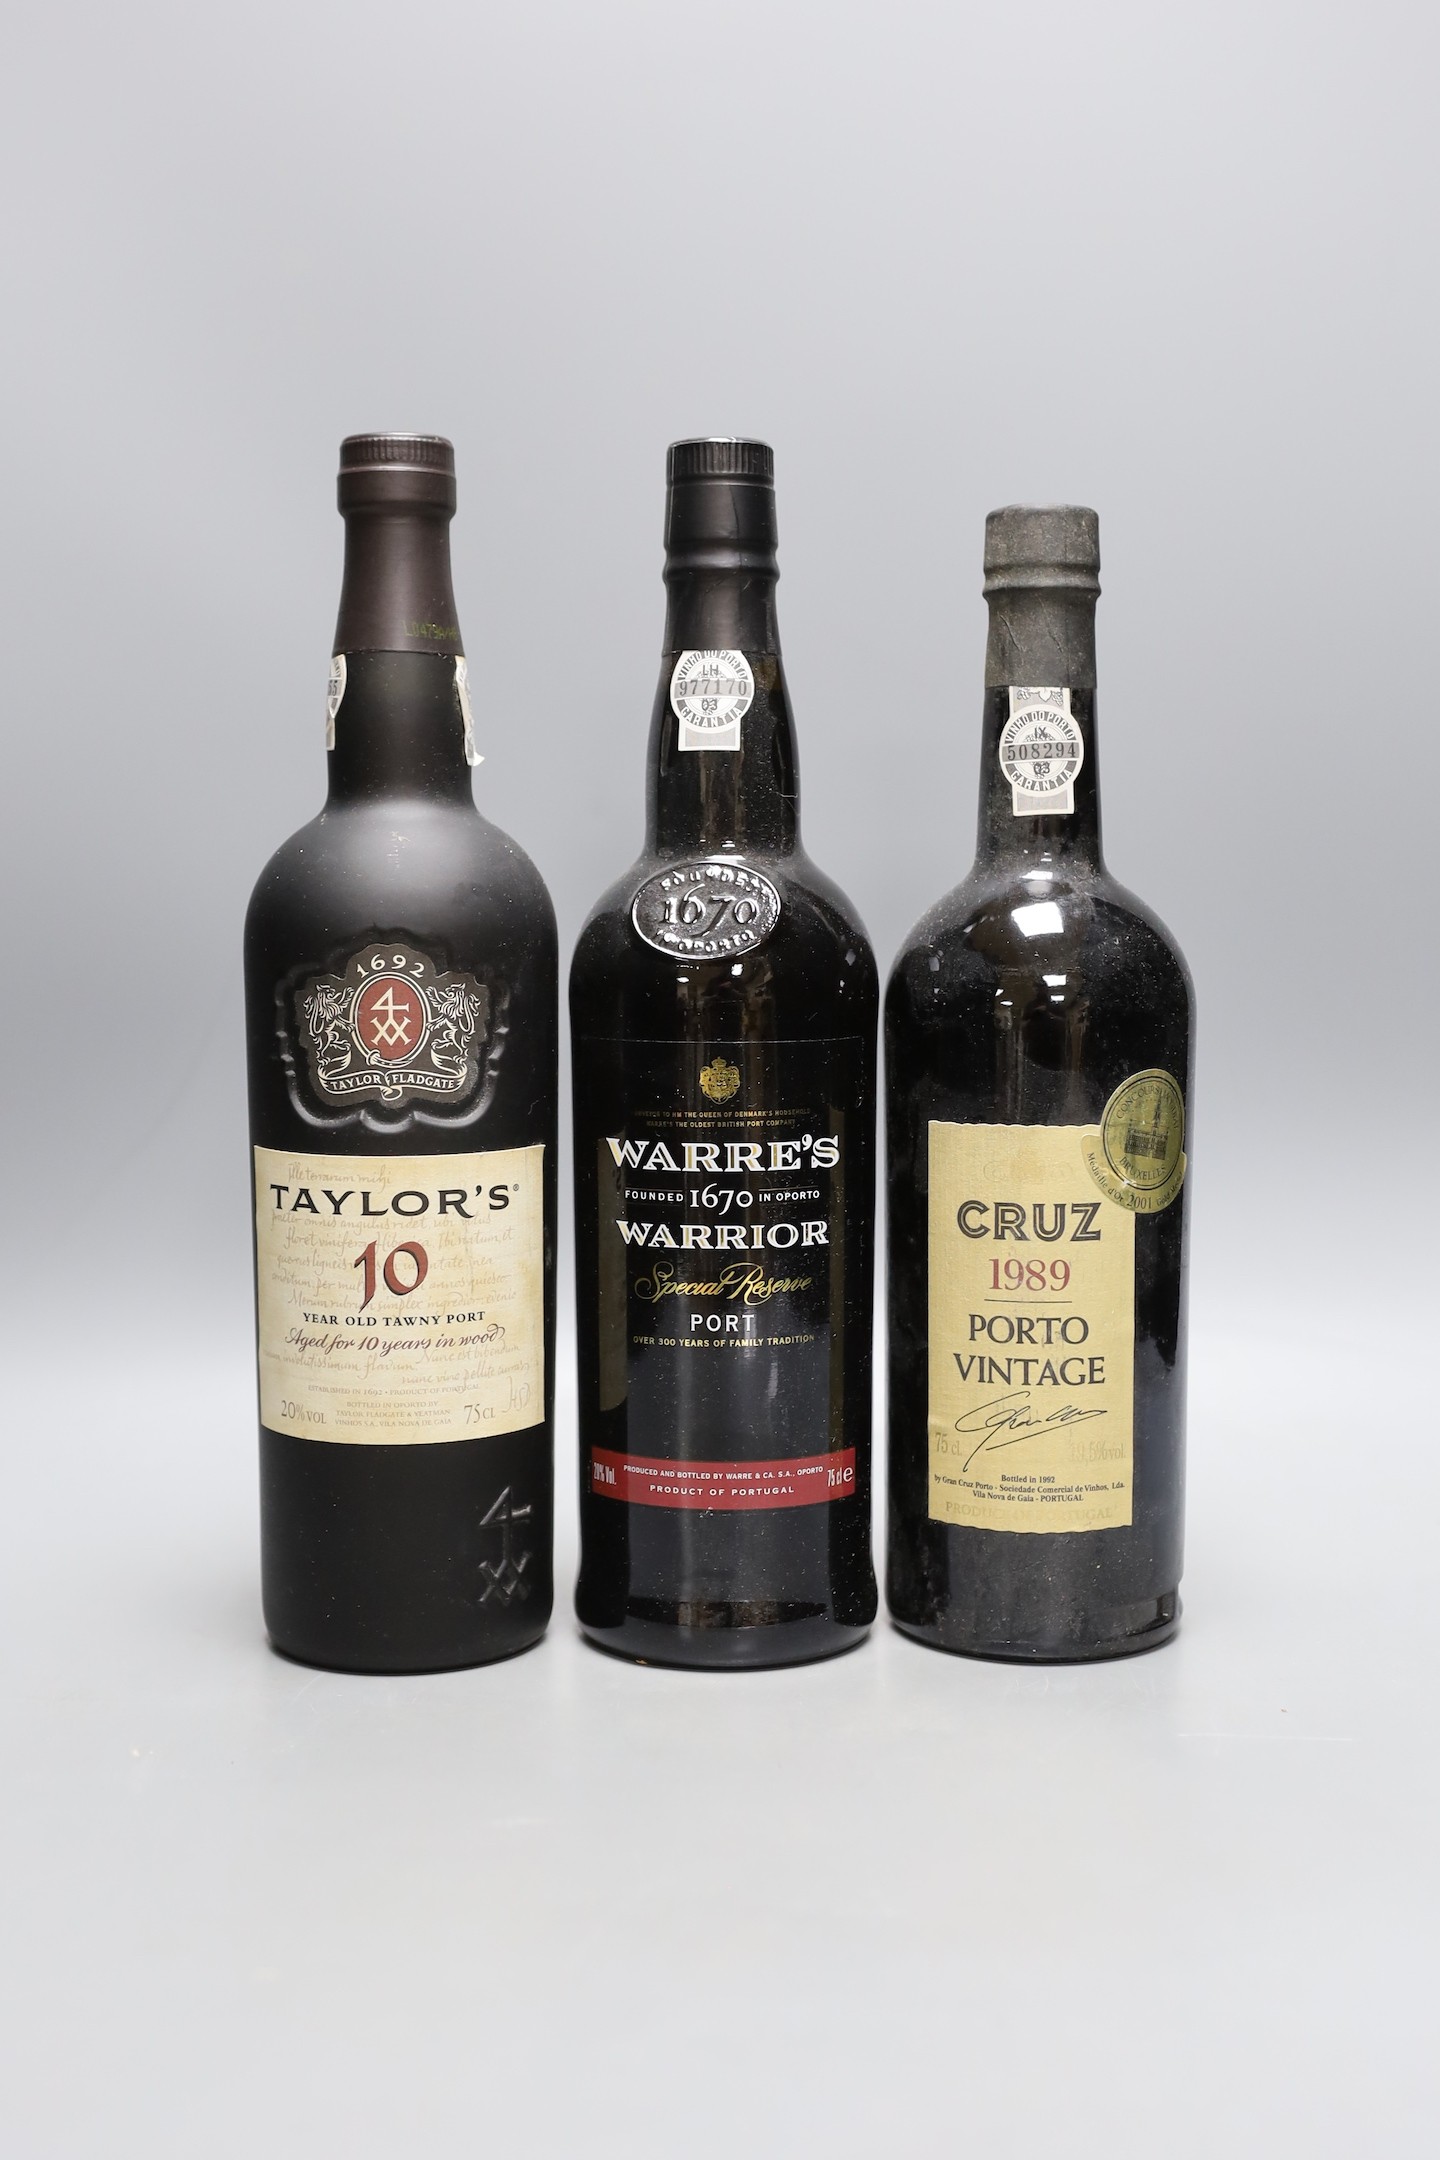 5 bottles of Cruz Porto vintage 1989, 3 bottles of Warres Warrior Special Reserve port and a